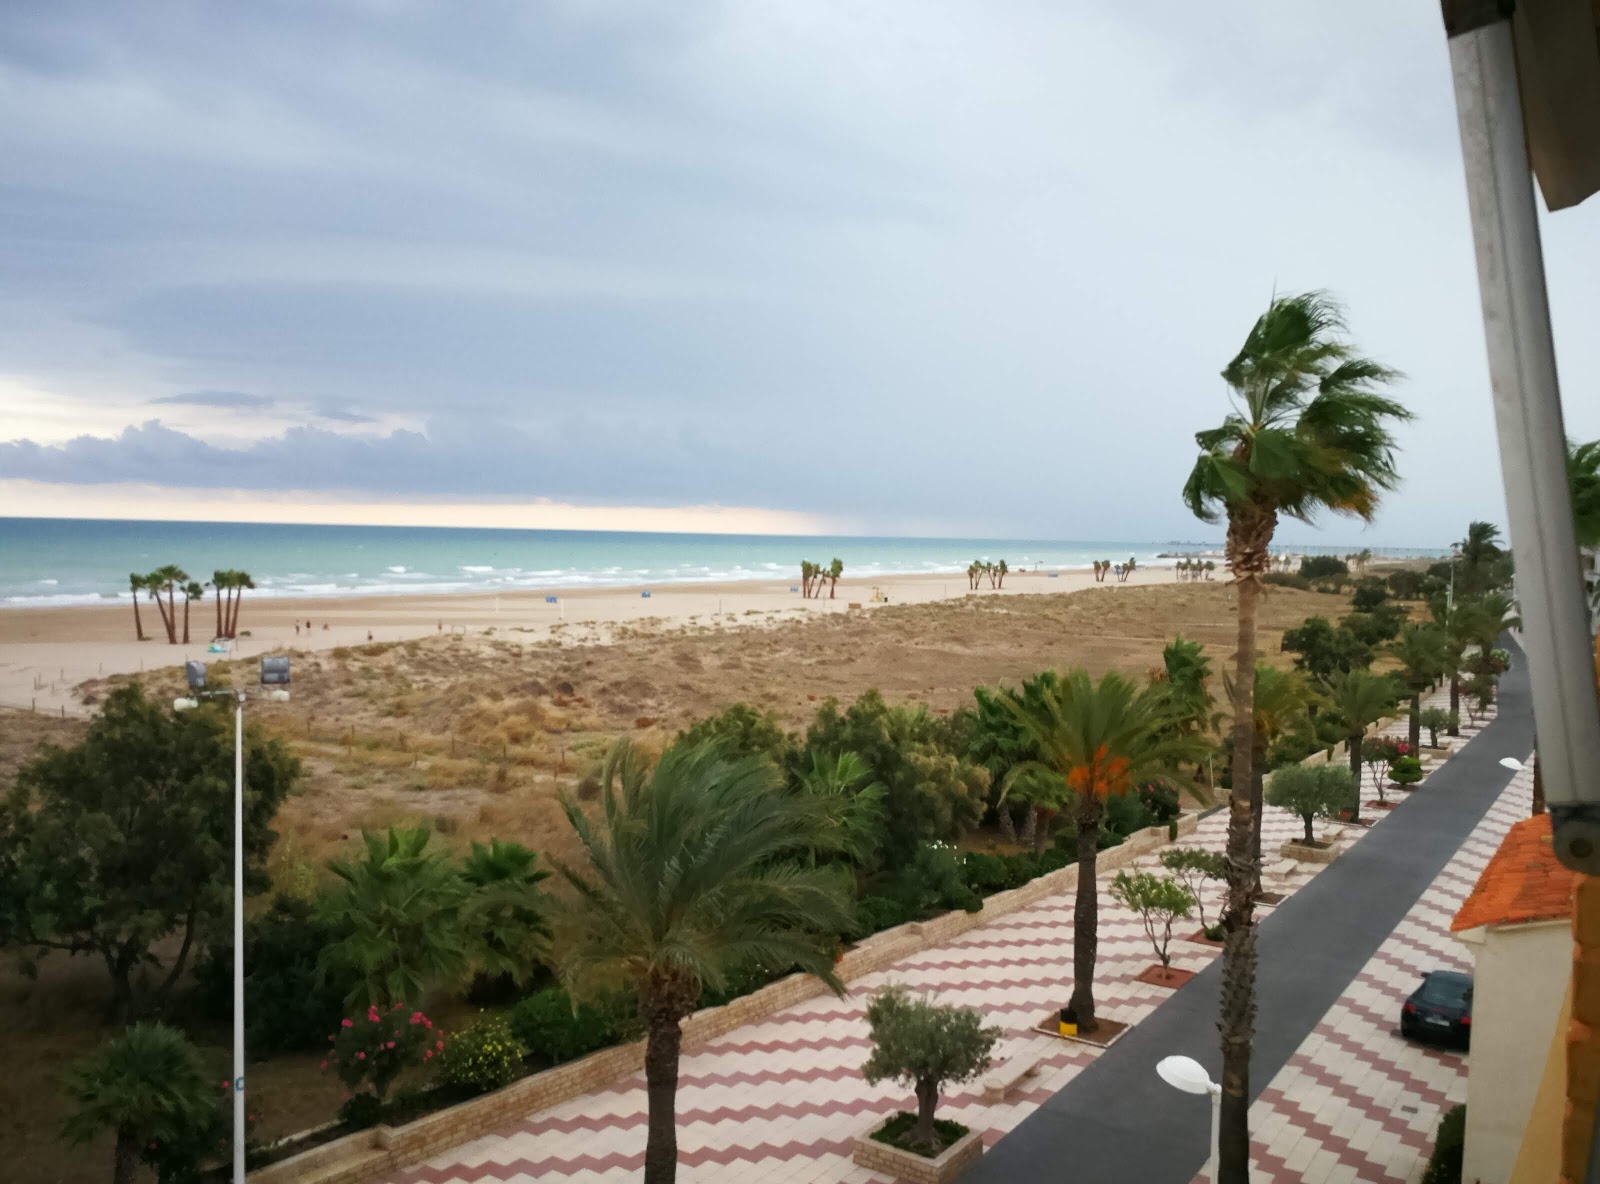 Canet Playa'in fotoğrafı ve yerleşim